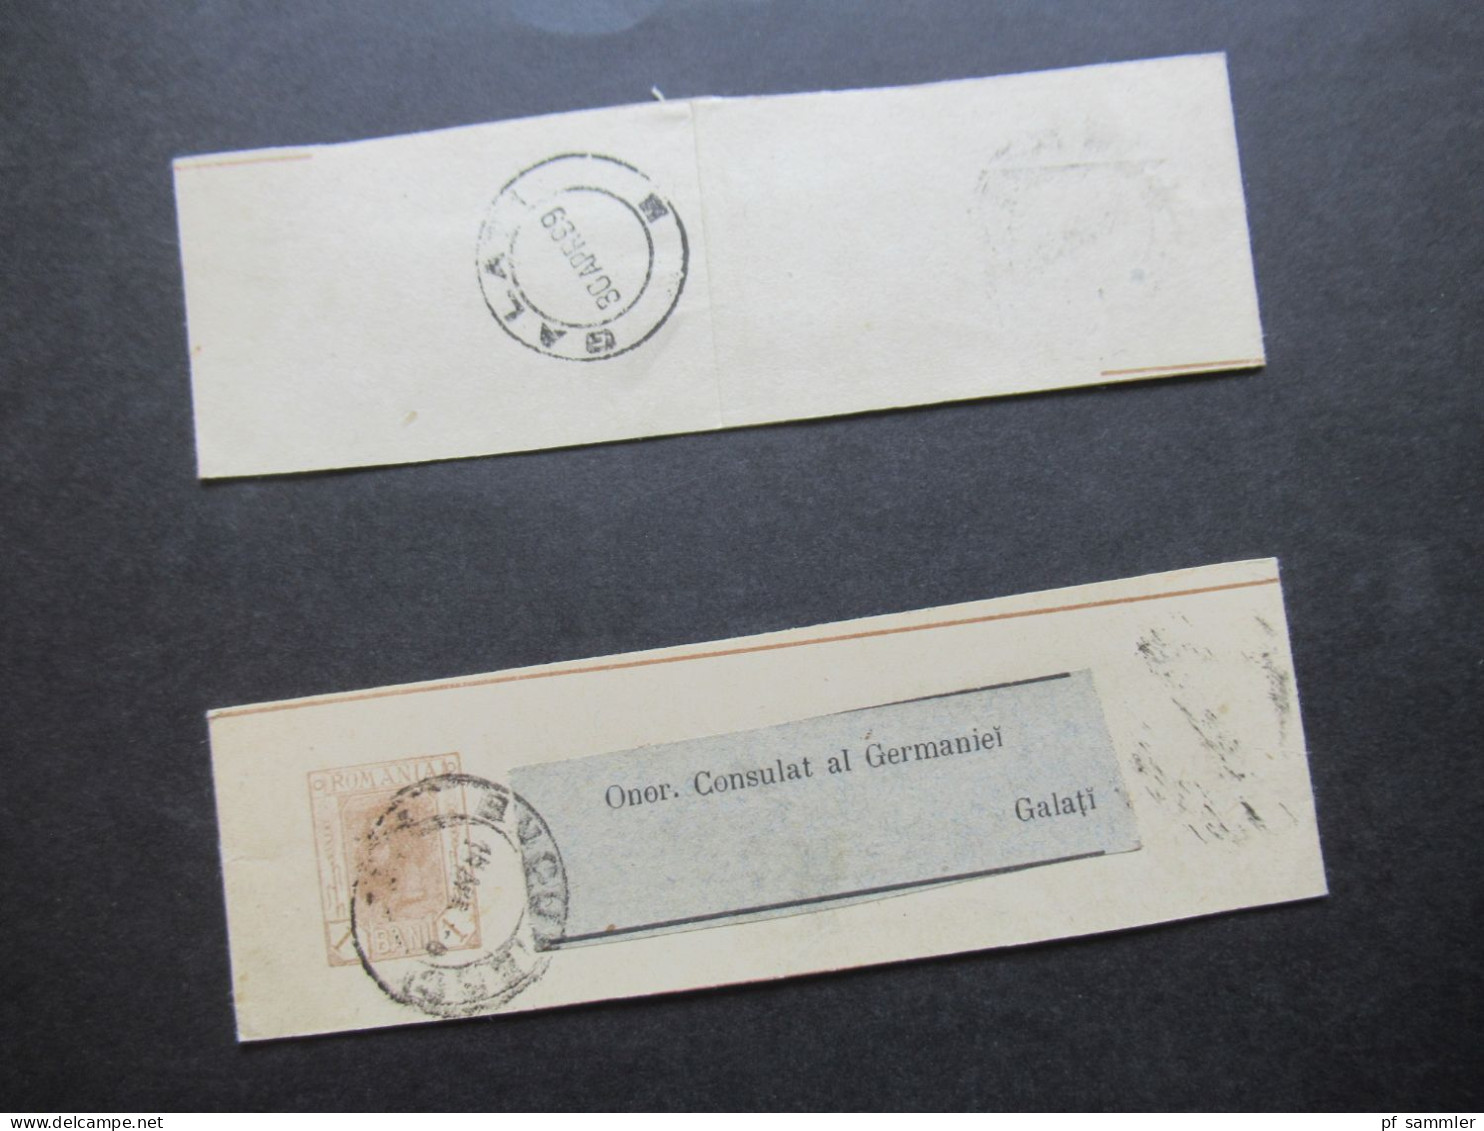 Rumänien 1899 Ganzsachen / 2x Streifband Mit Adressaufkleber Onor. Consulat Al Germaniei Galati - Enteros Postales